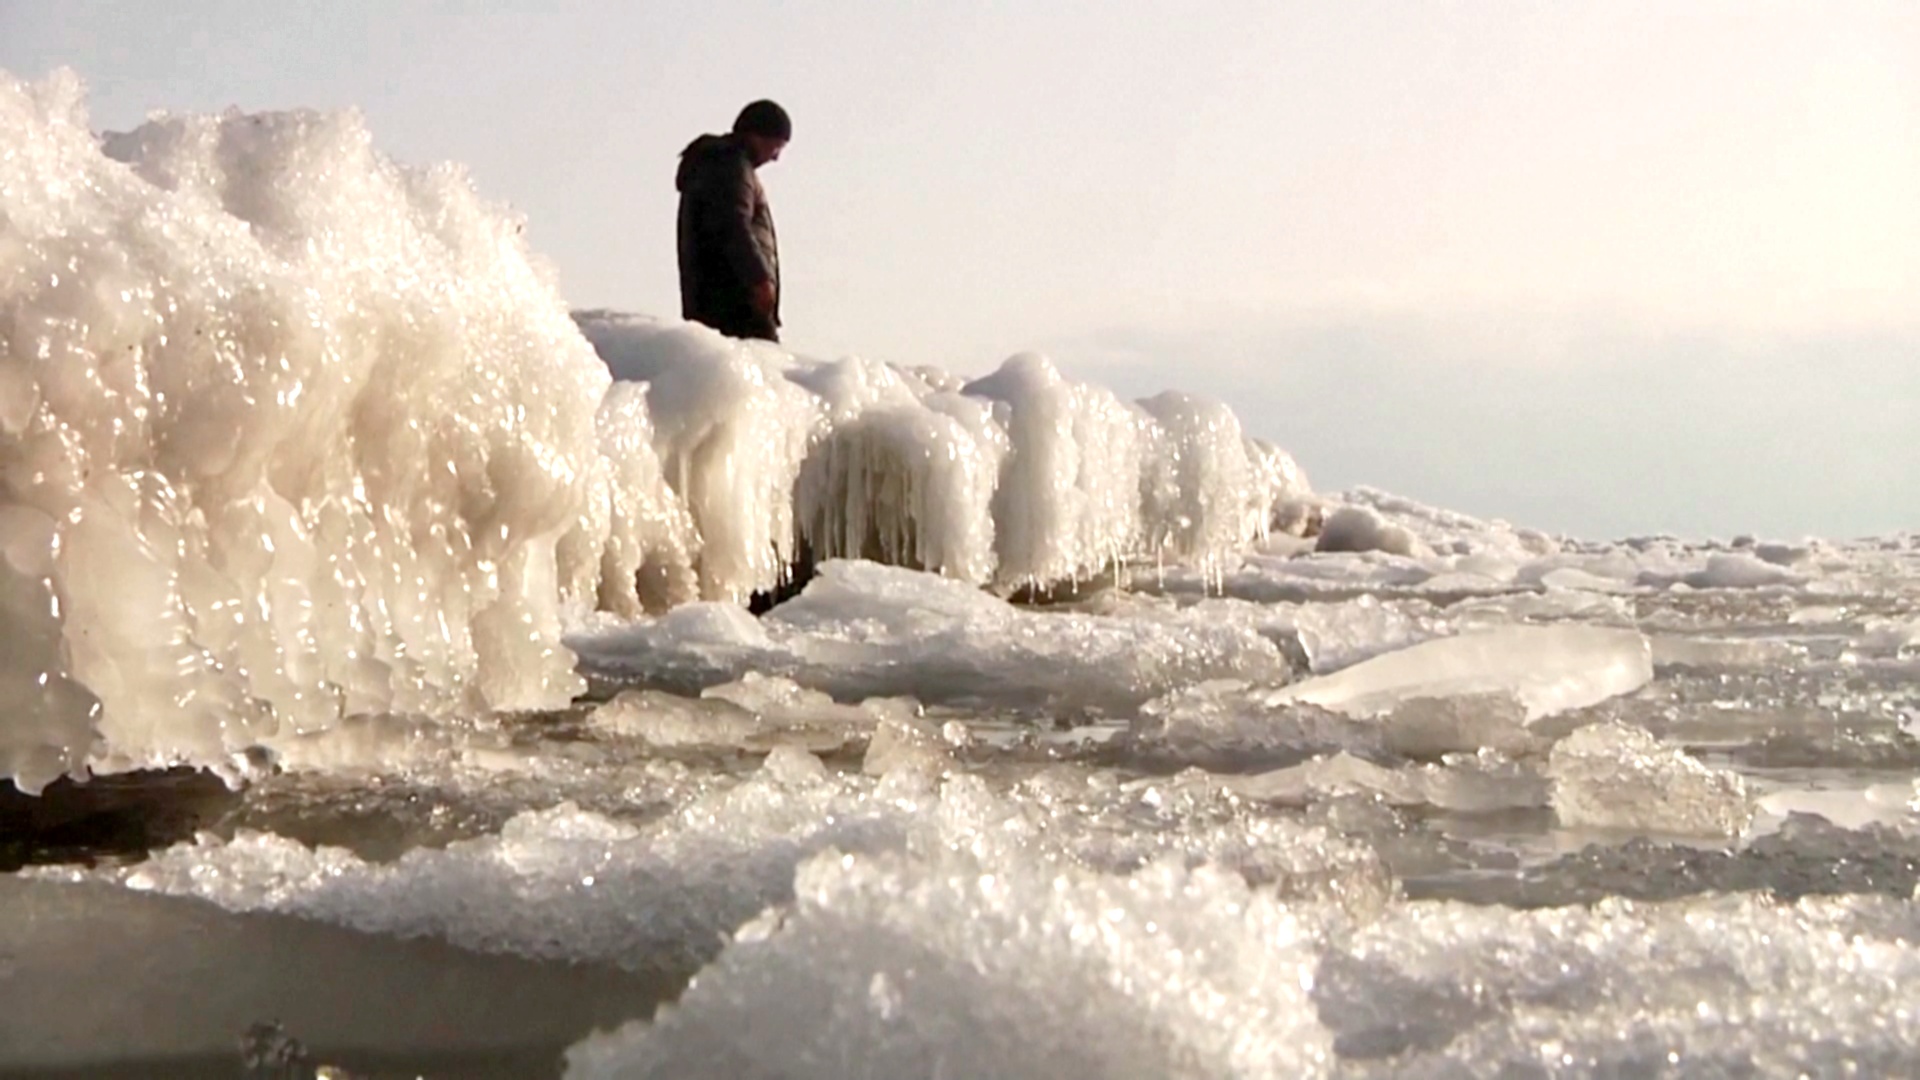 «Горячее озеро» Кыргызстана покрылось льдом из-за экстремальных холодов